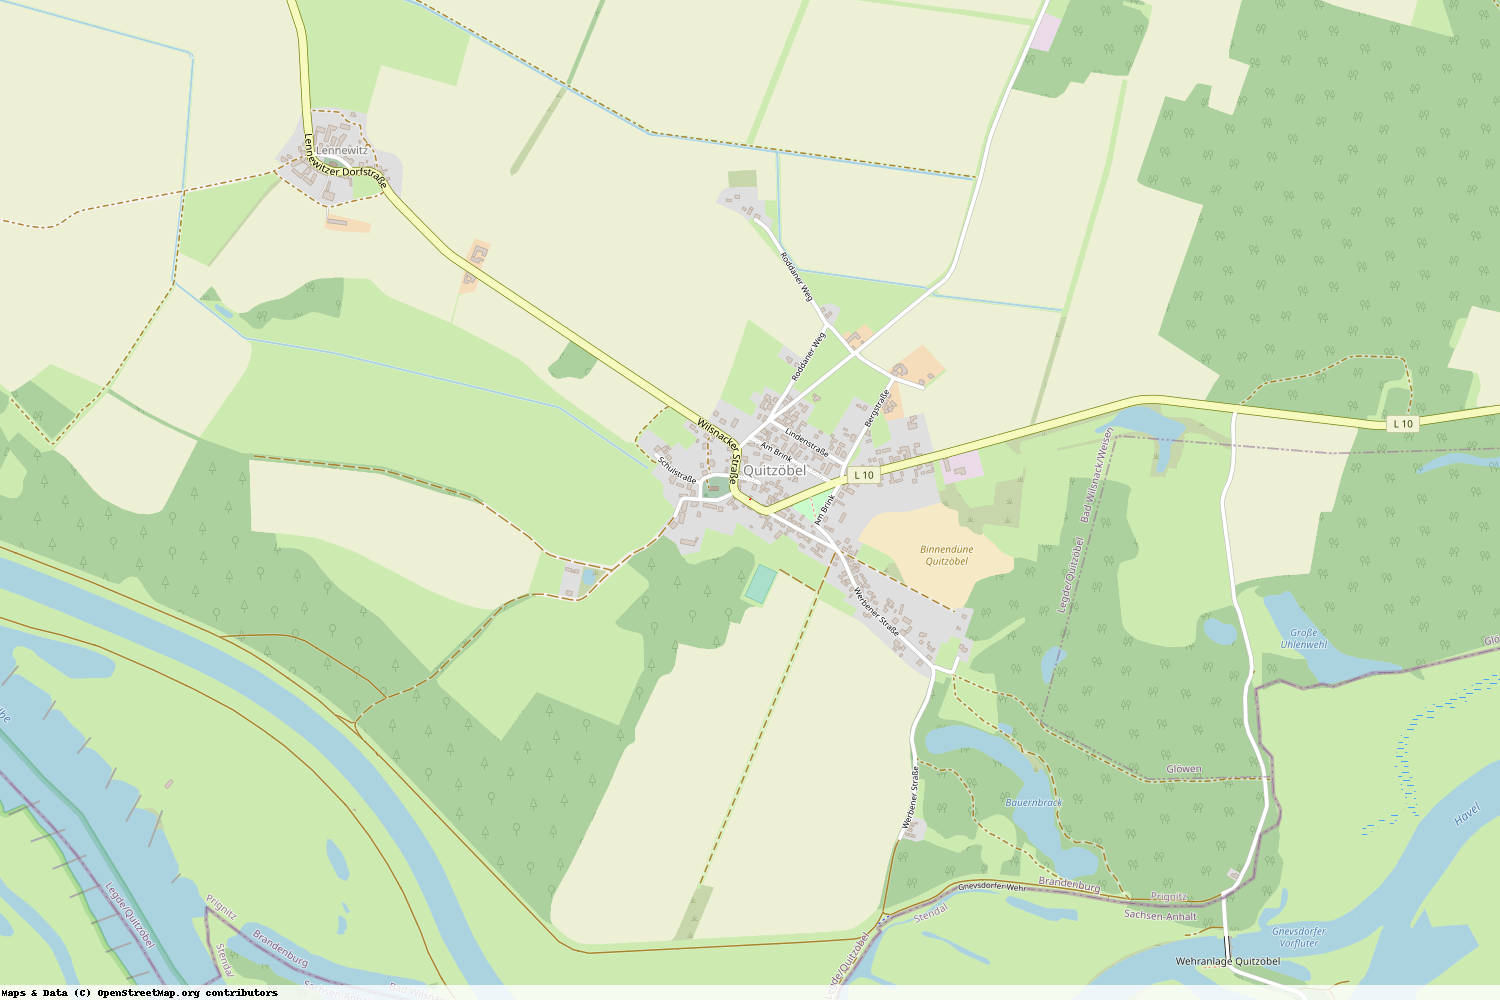 Ist gerade Stromausfall in Brandenburg - Prignitz - Legde-Quitzöbel?